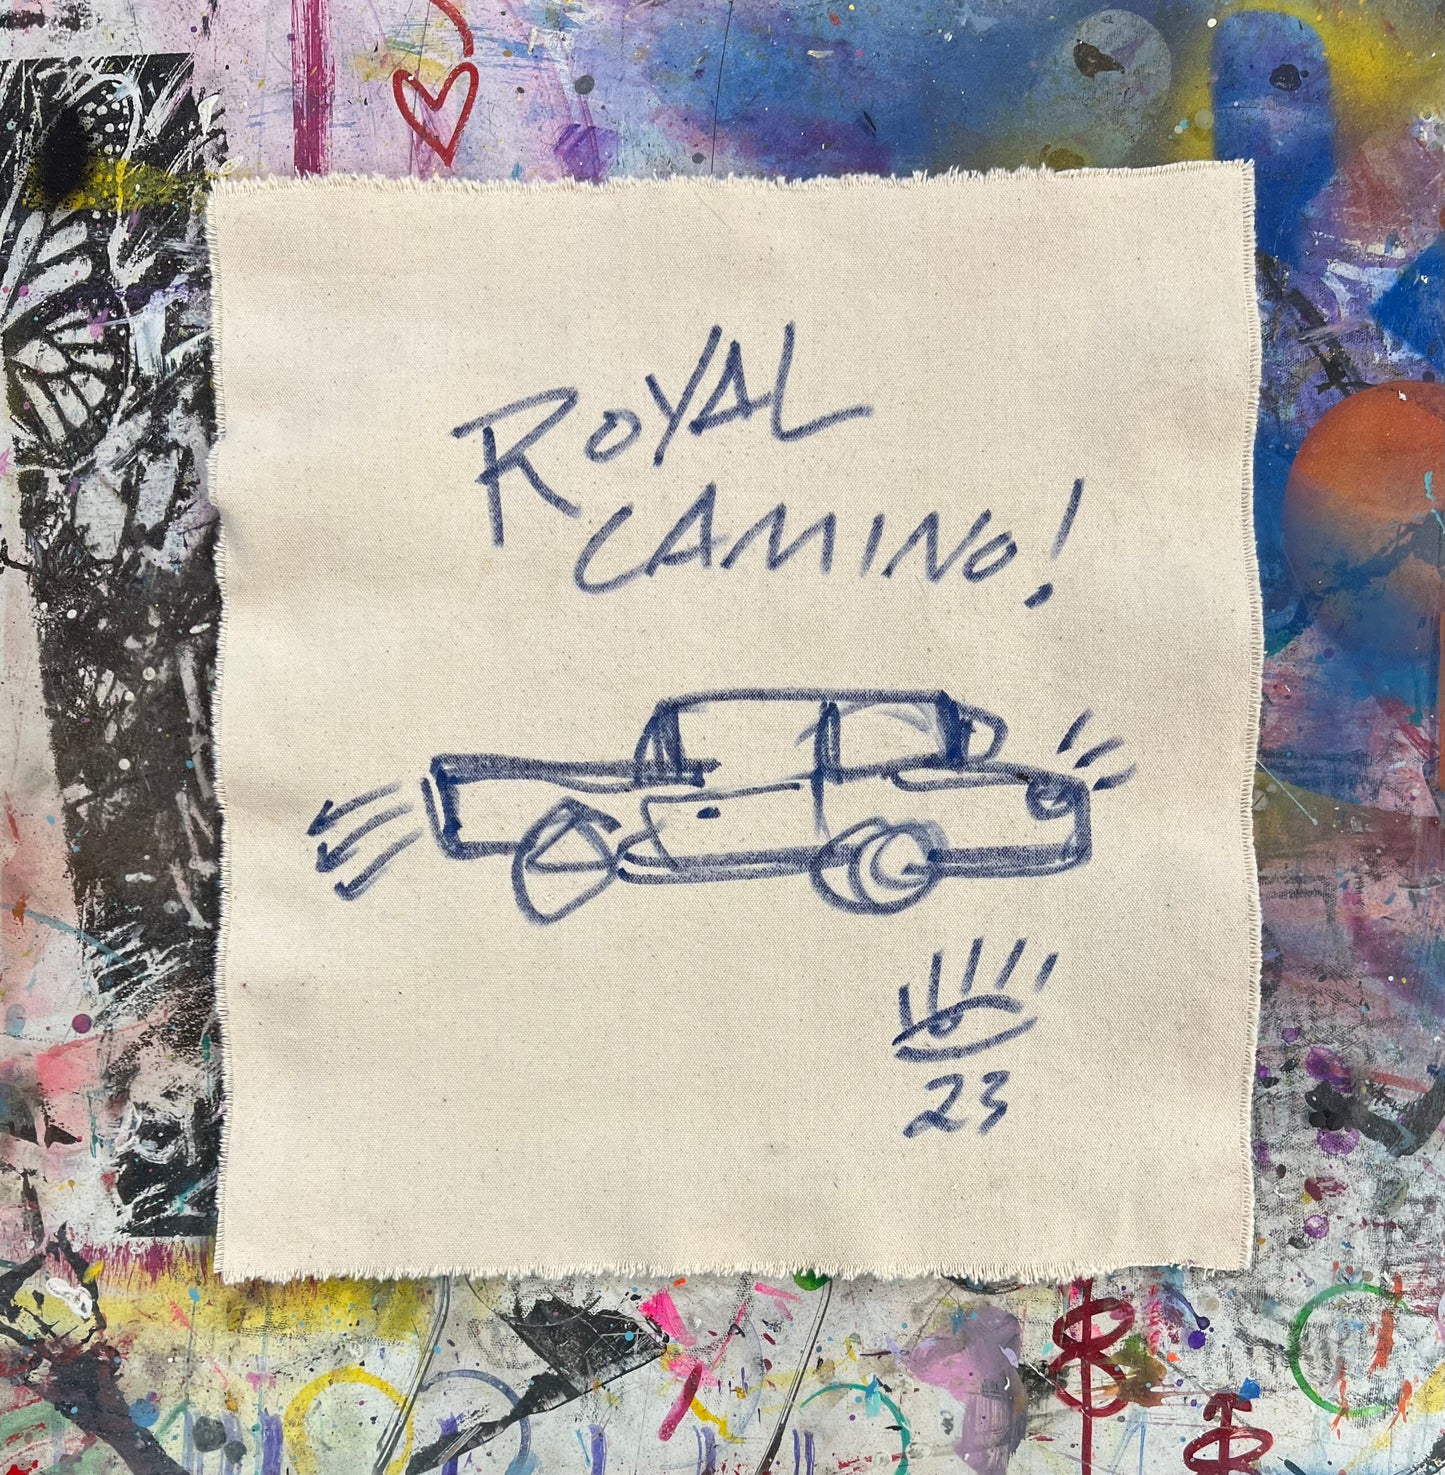 Royal Camino / mantra / May 2023